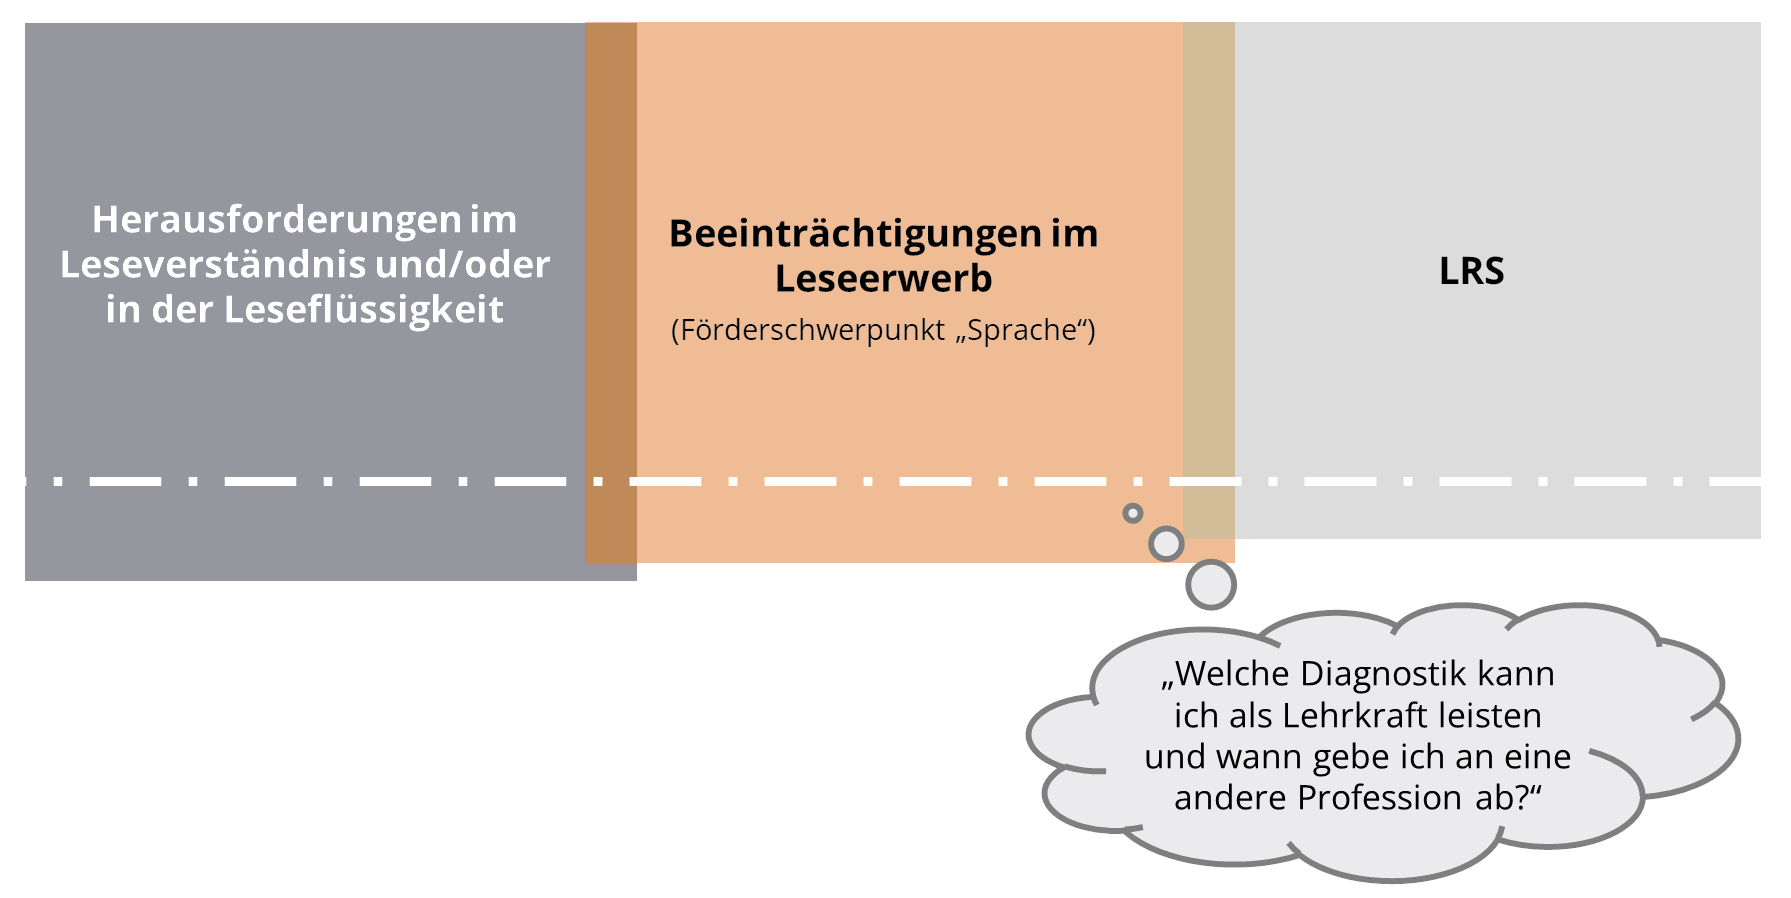 Kontinuum der Herausforderungen, Beeinträchtigung und LRS im Leseerwerb. (© Leibniz Universität Hannover | Stelze, 2022)